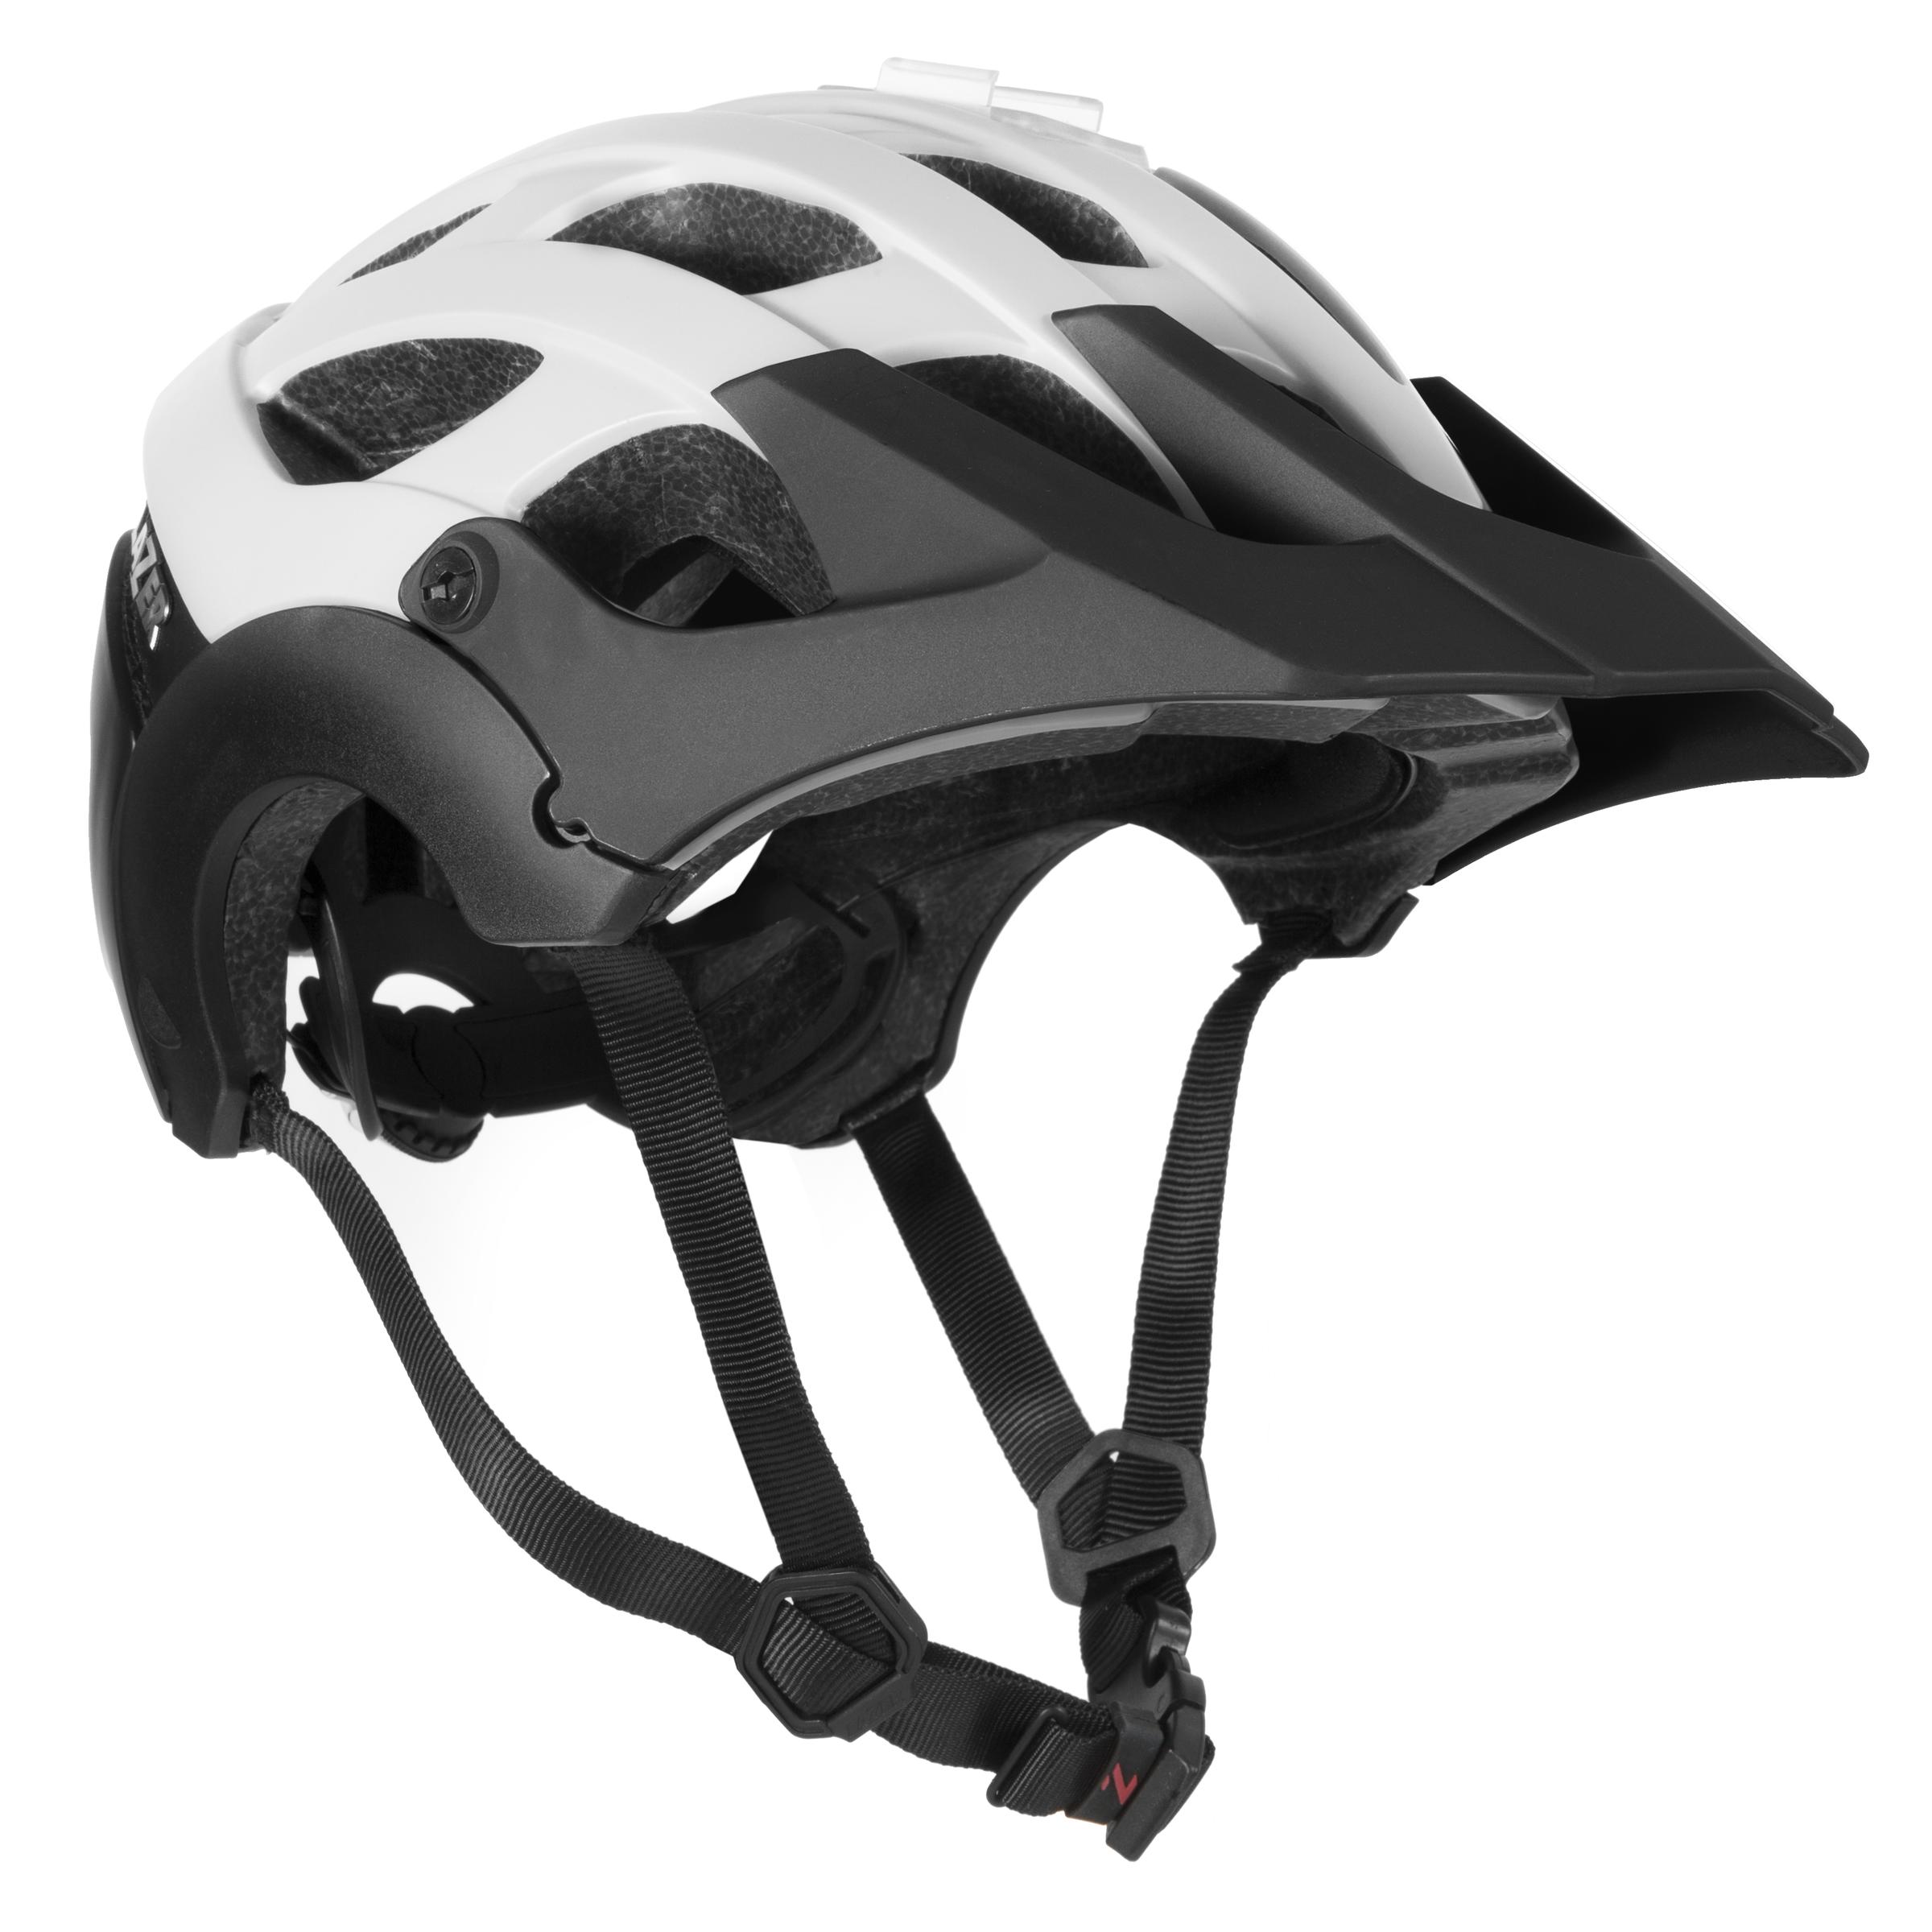 extra large bike helmet